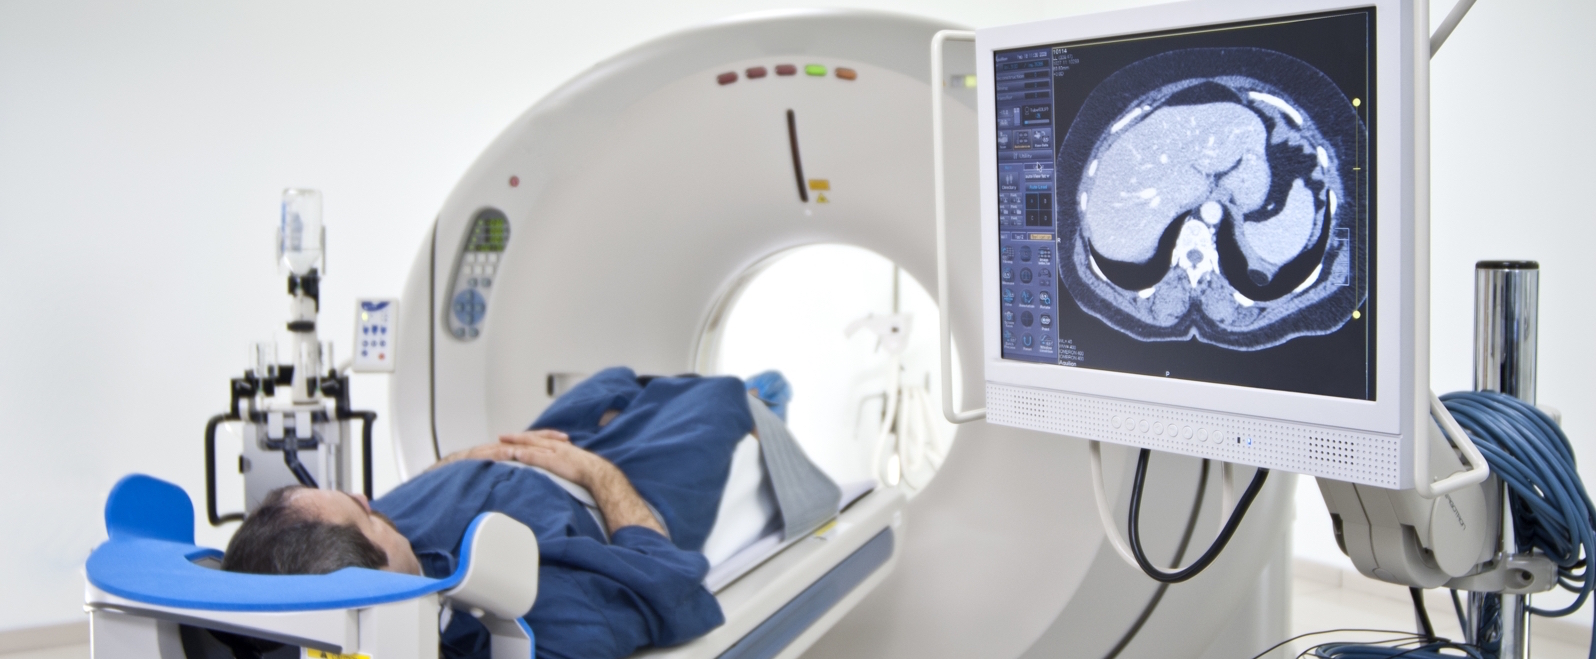 Una tomografía permite detectar parkinson en personas con trastornos del sueño...